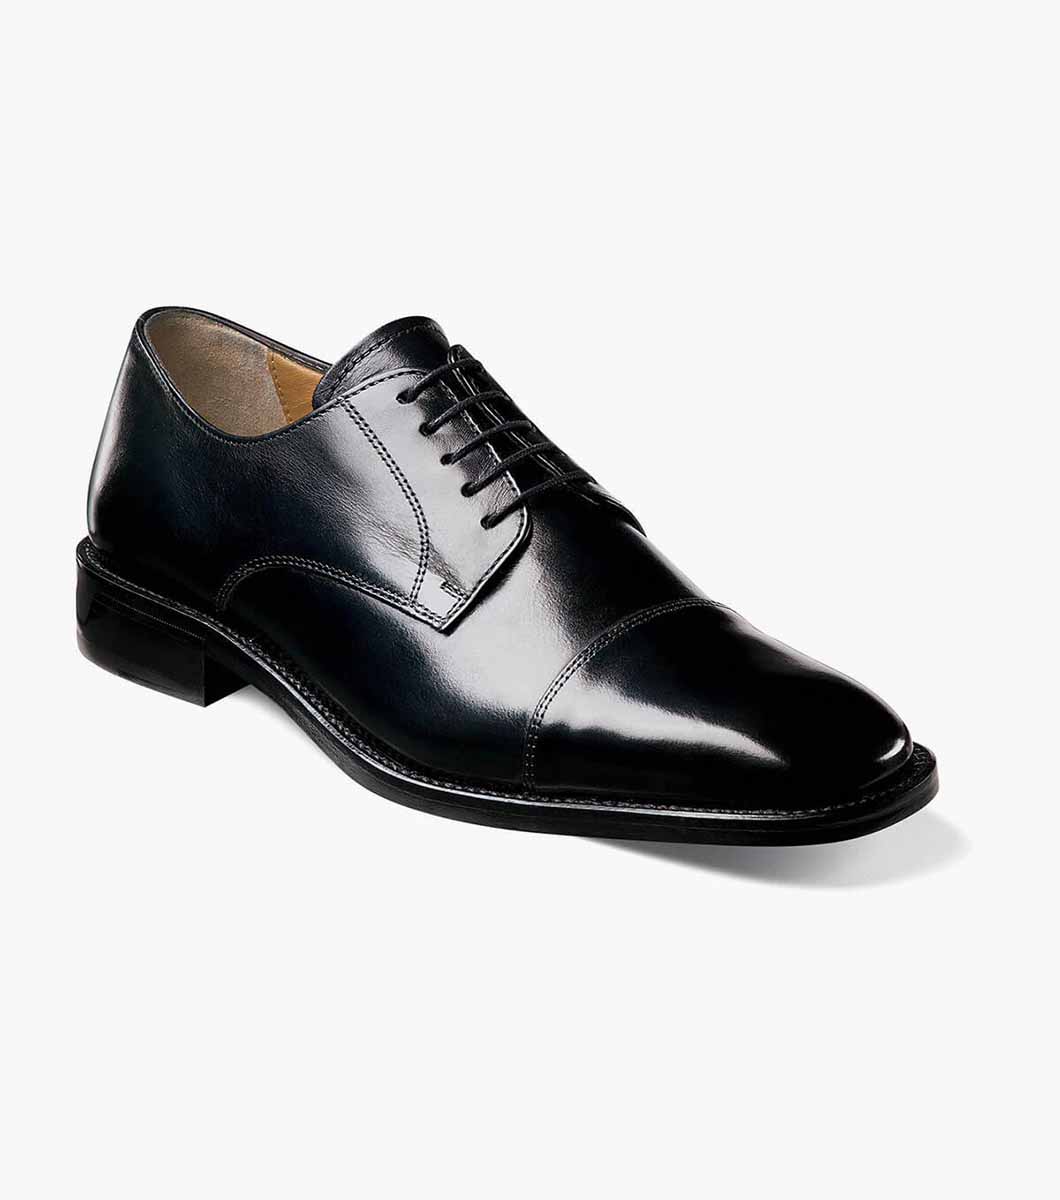 Mens leather cap toe lace up shoe